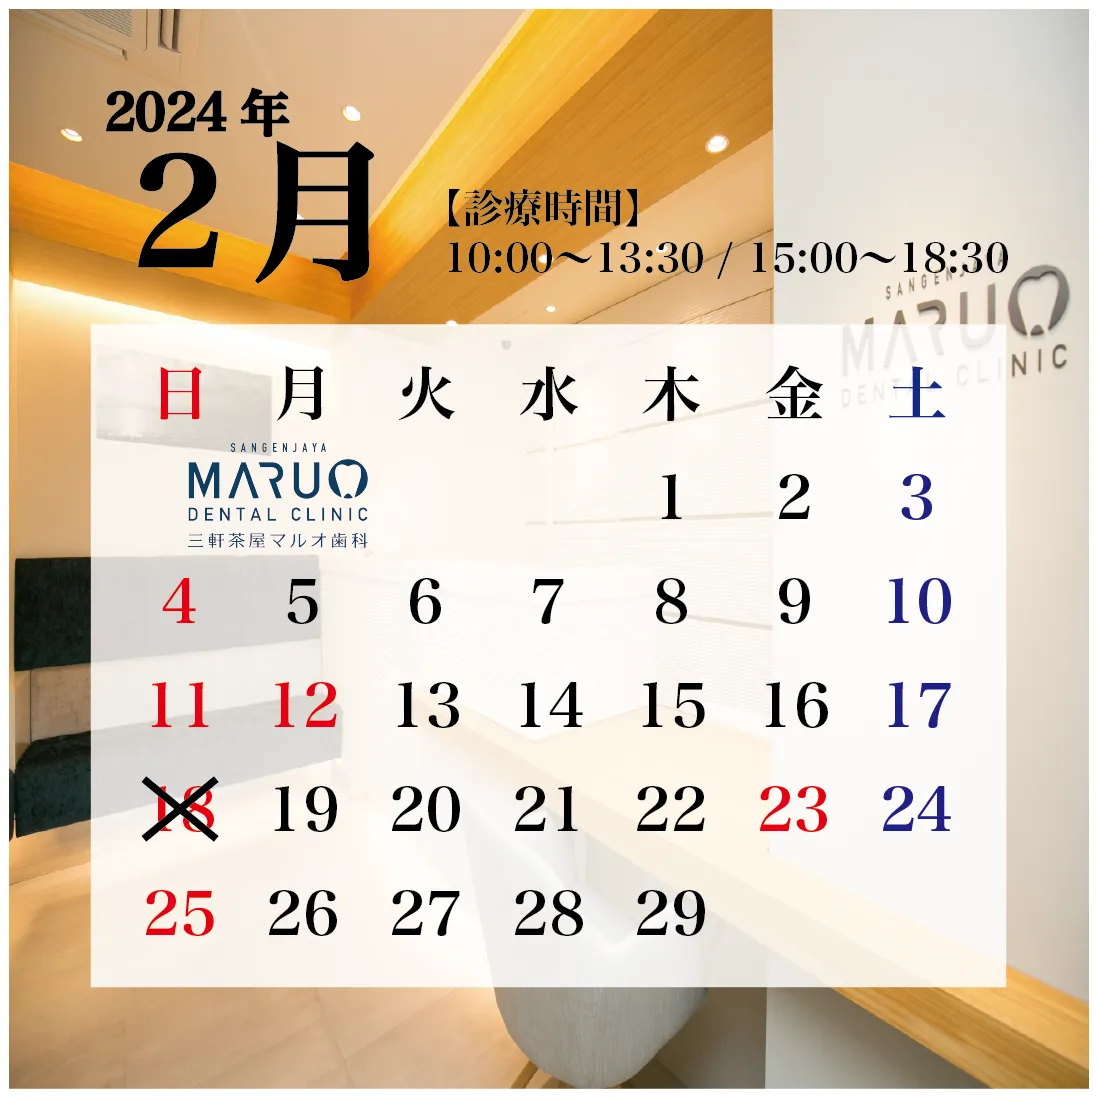 三軒茶屋マルオ歯科の診療日カレンダー